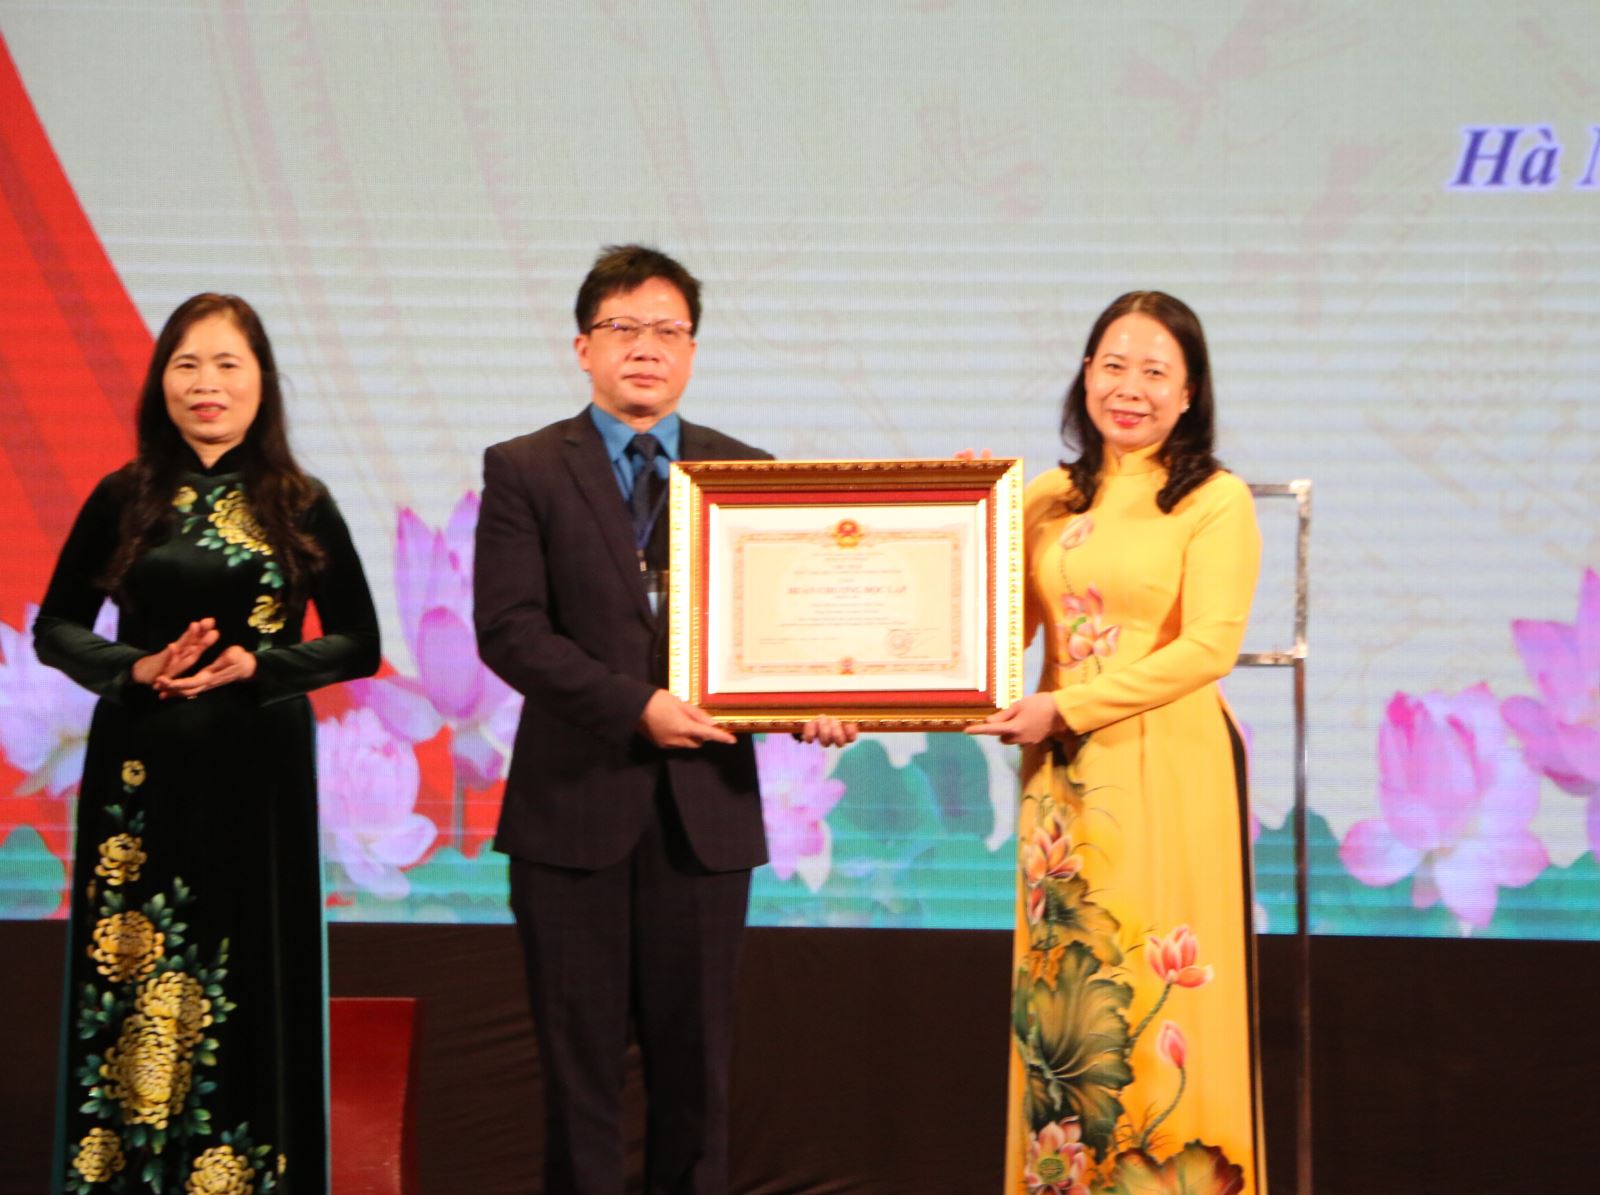 Công đoàn Giáo dục Việt Nam tổ chức Lễ kỷ niệm 70 năm thành lập Công đoàn Giáo dục Việt Nam, đón nhận Huân chương Độc lập hạng Ba và Tuyên dương cán bộ công đoàn tiêu biểu